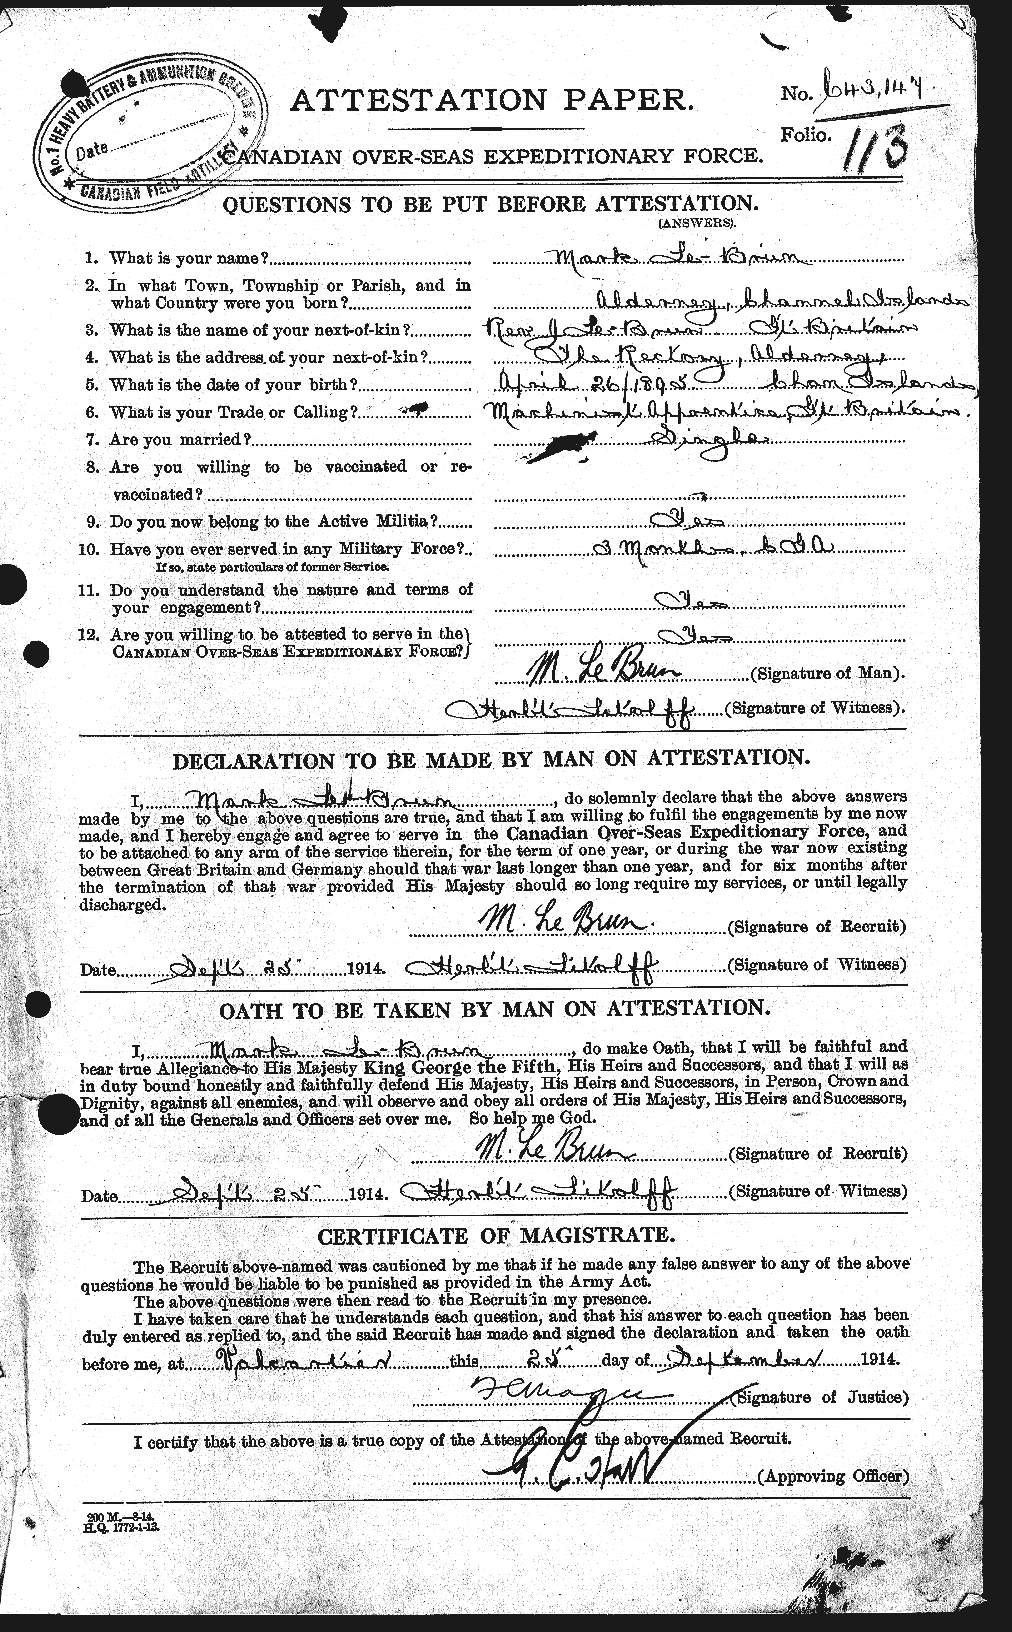 Dossiers du Personnel de la Première Guerre mondiale - CEC 461581a